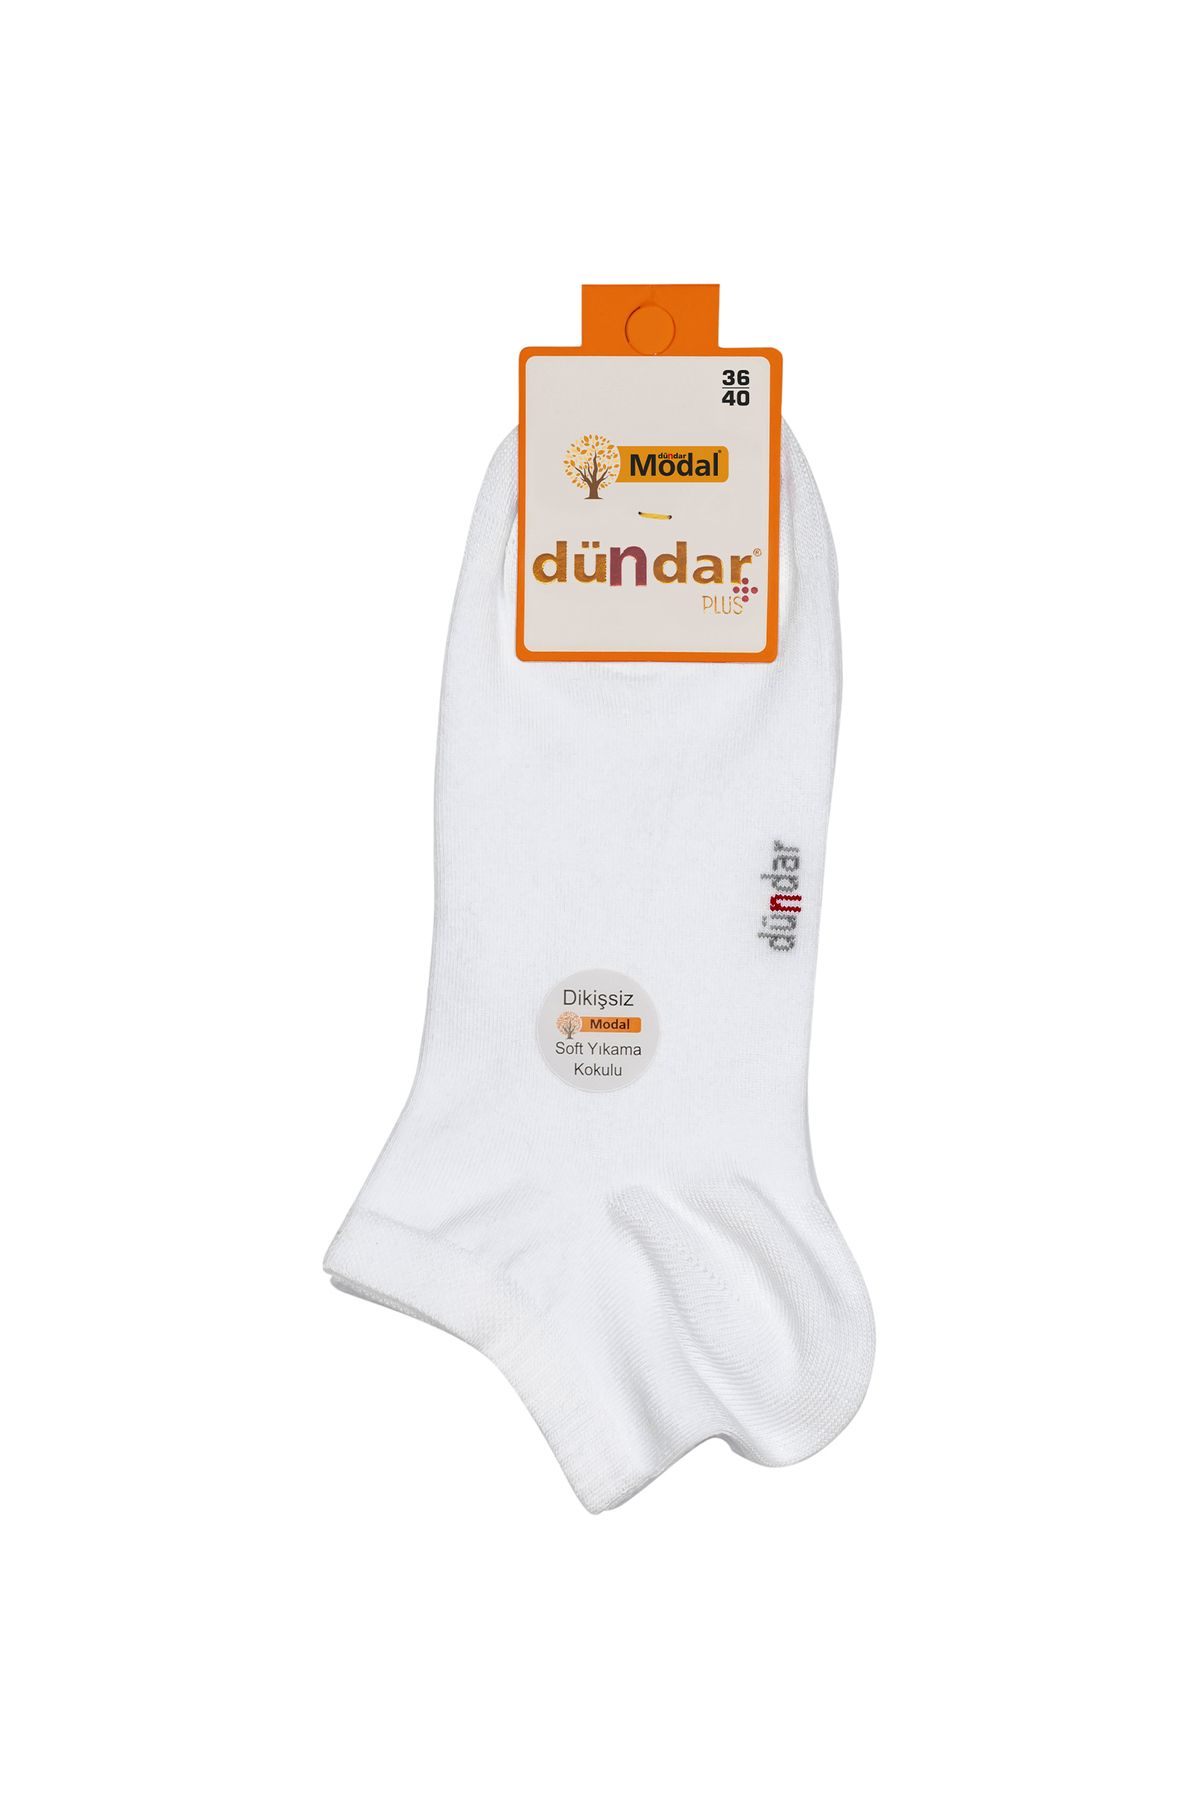 Dündar Unisex Beyaz Modal 6'Lı Patik Çorap